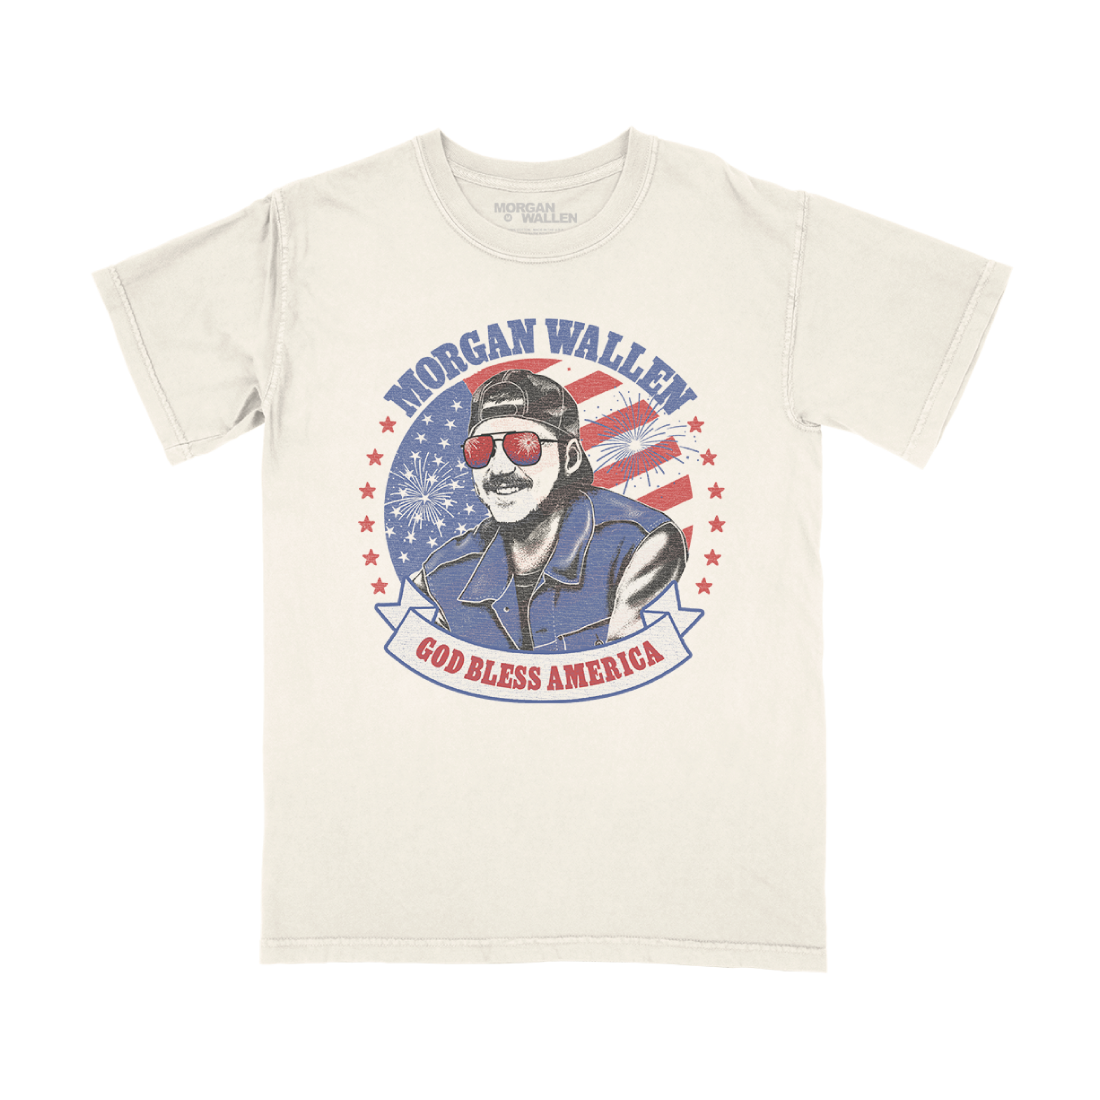 Morgan Wallen - God Bless America T-Shirt